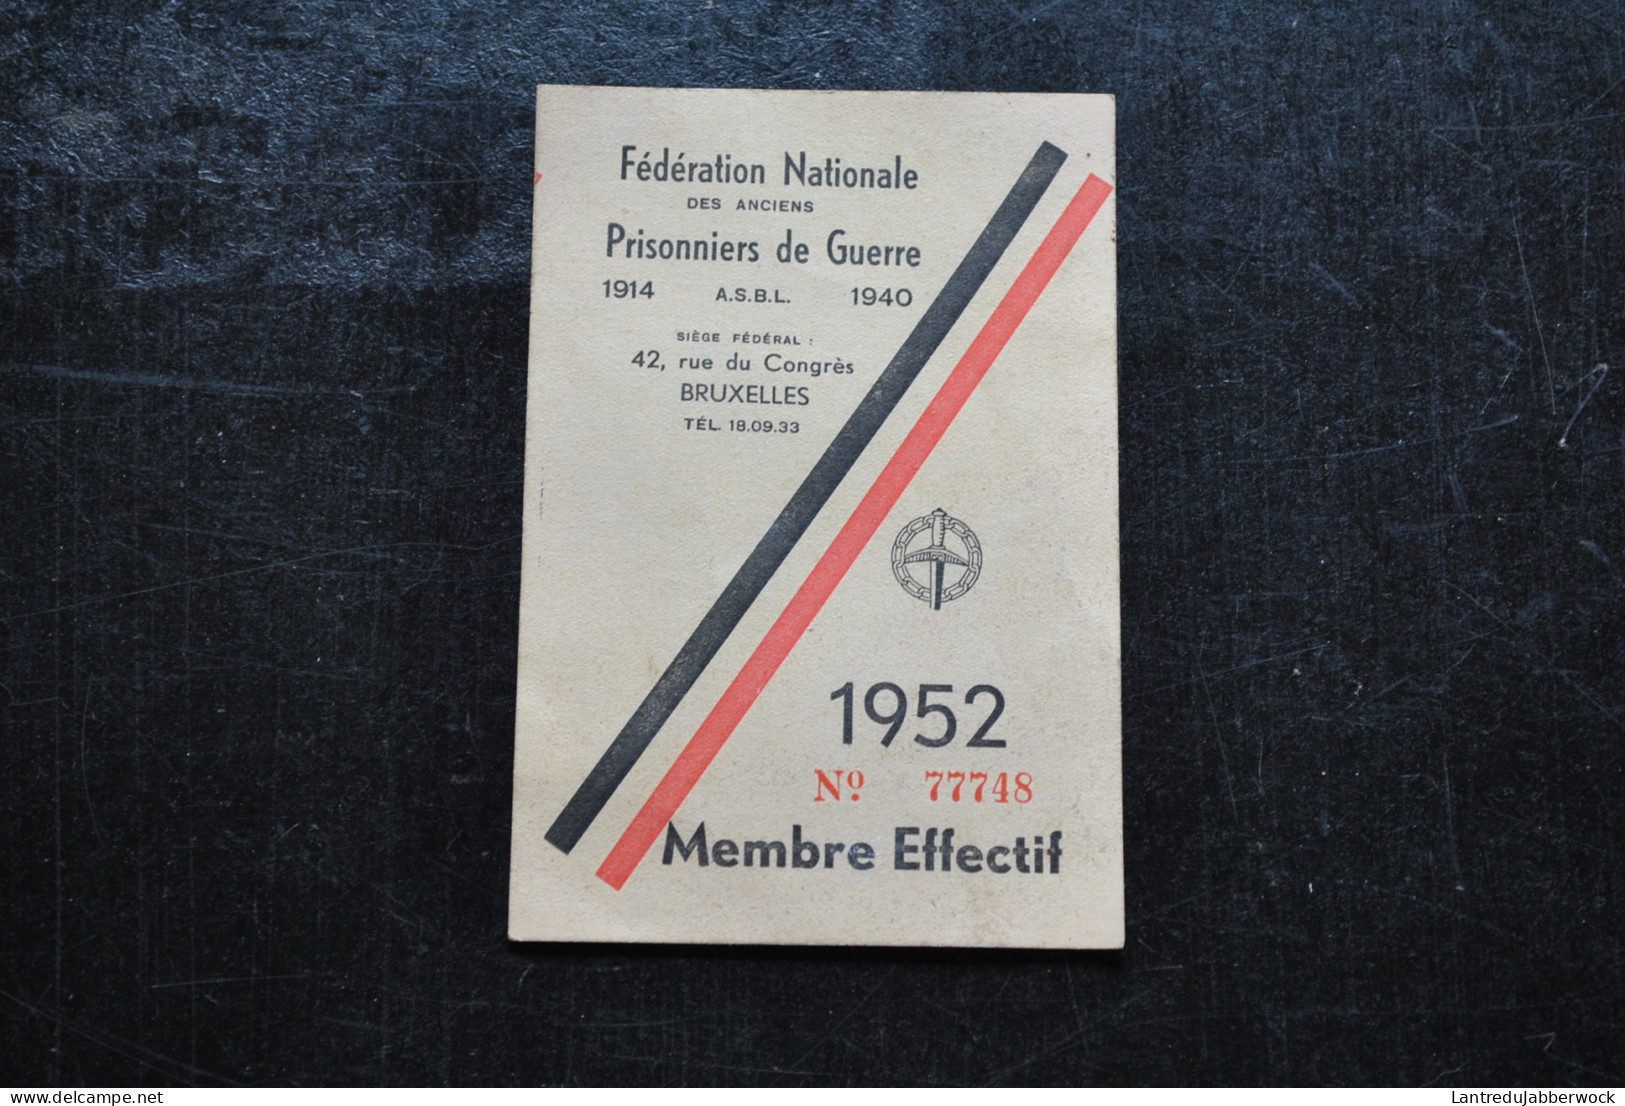 Ransart STASSIN Fédération Nationale Des Anciens Prisonniers De Guerre 1914 1940 - 1952 - Membre Effectif - Documenti